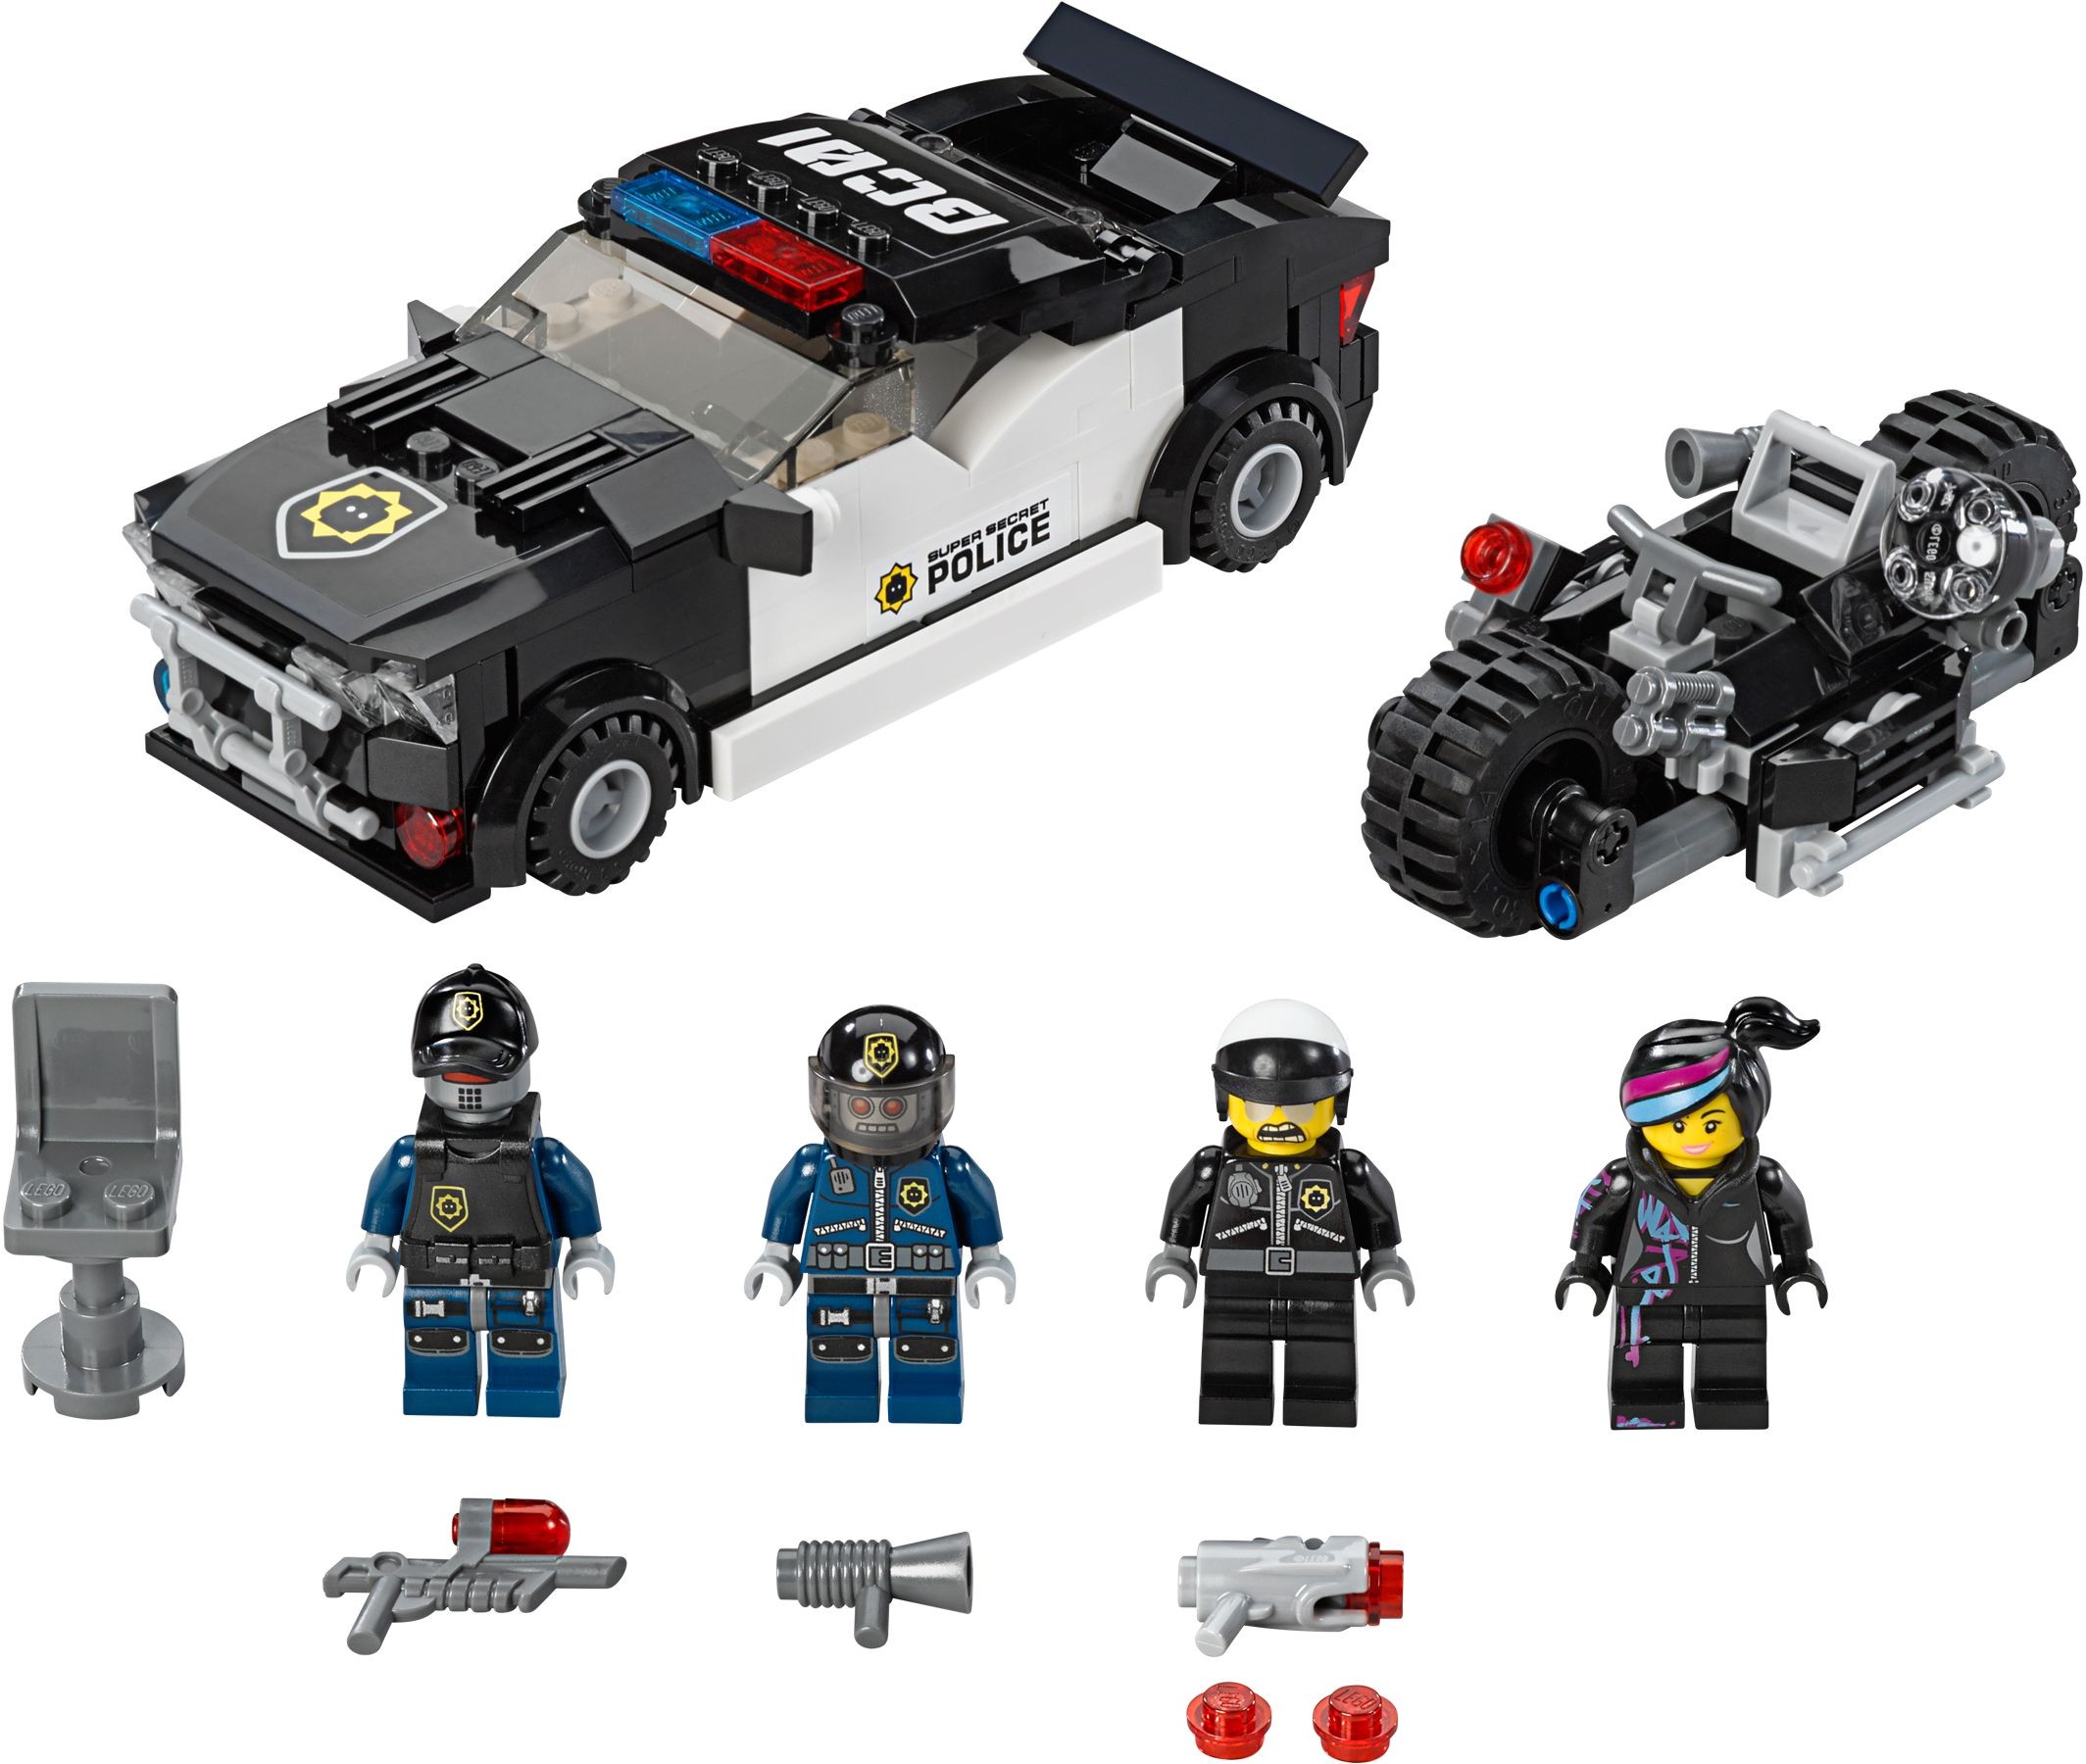 LEGO MOVIE new PROMO POLYBAG set 30282 Super Secret Police Enforcer Space Pilot